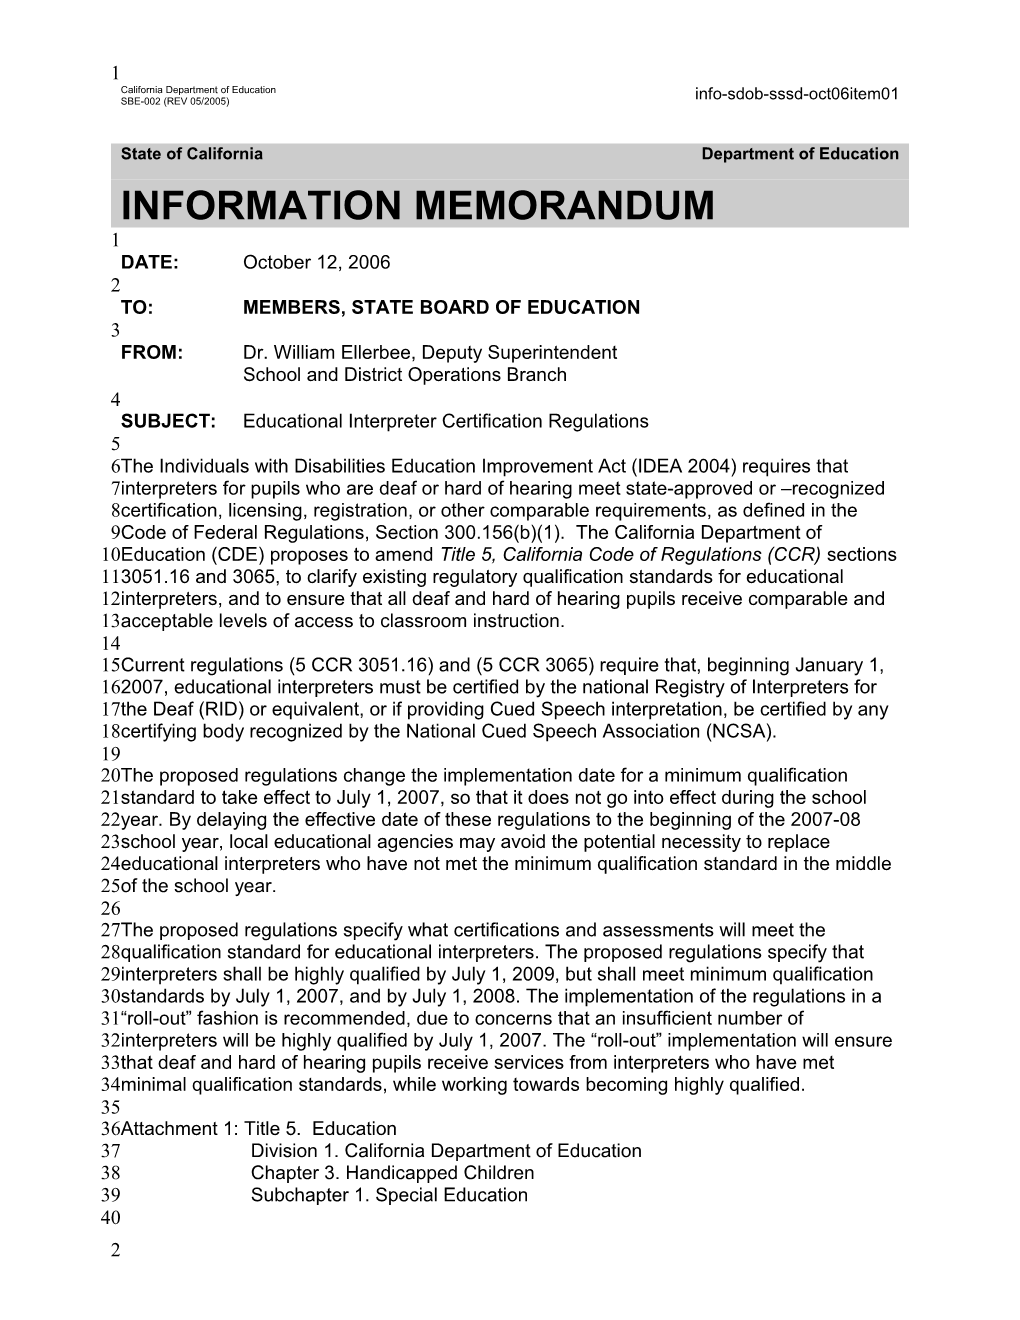 October 2006 SSSD Item 01 - Information Memorandum (CA State Board of Education)